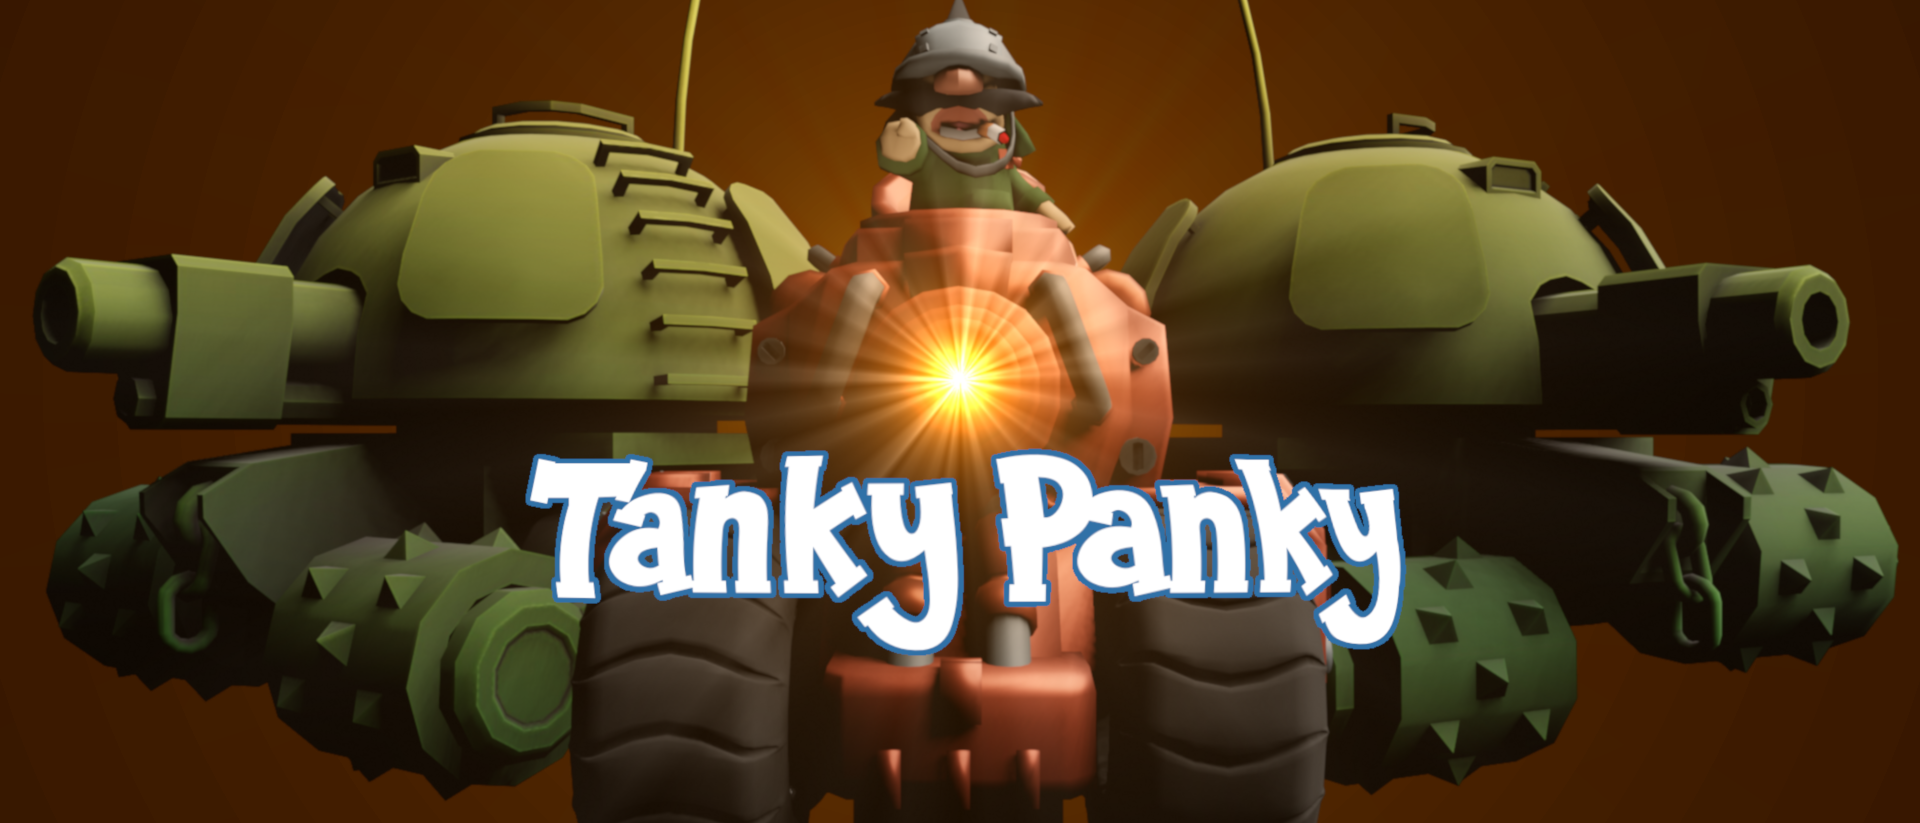 Tanky Panky